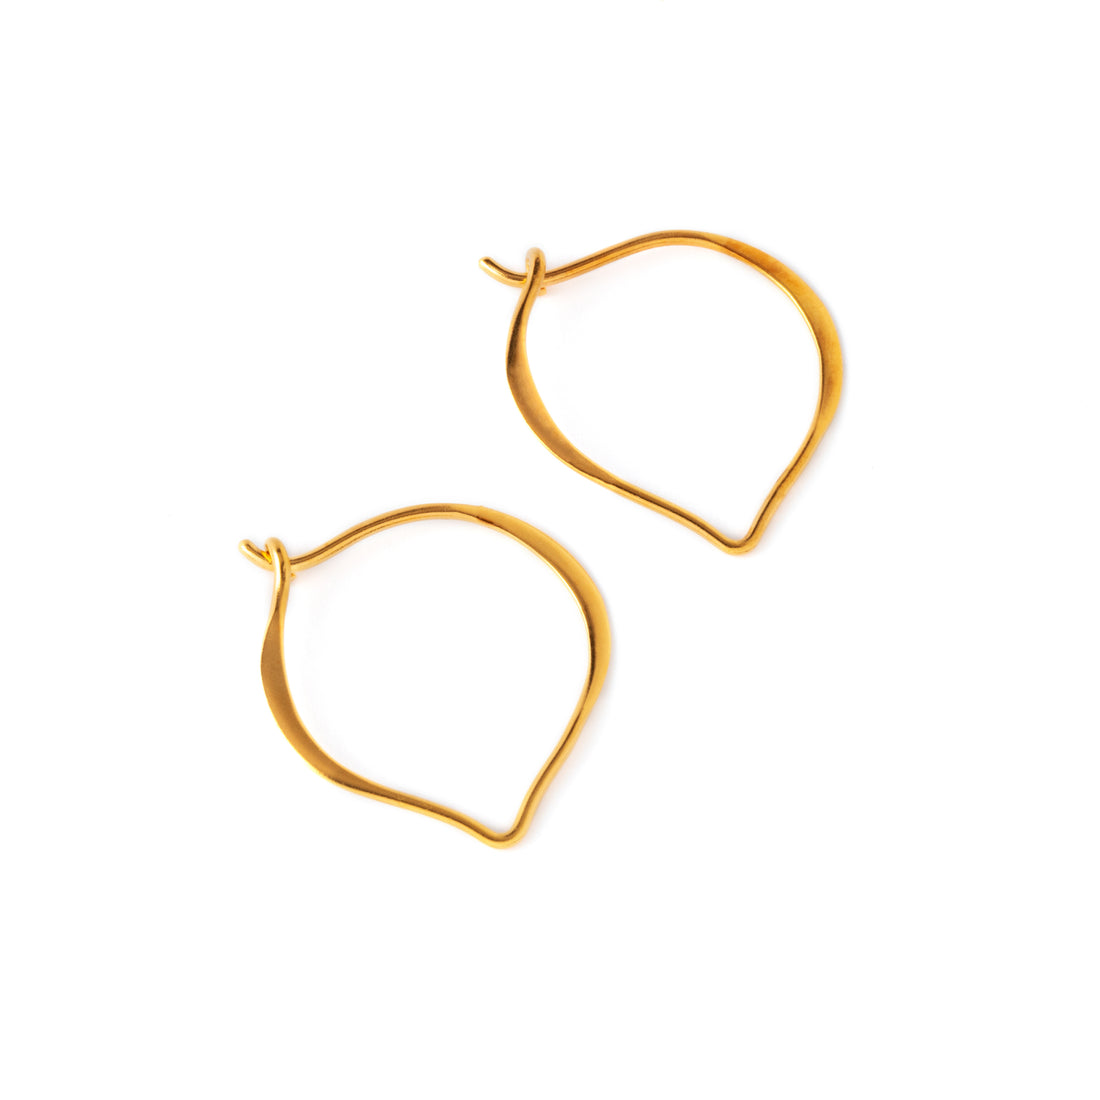 pair of Gold Marrakesh hoop earrings right side view